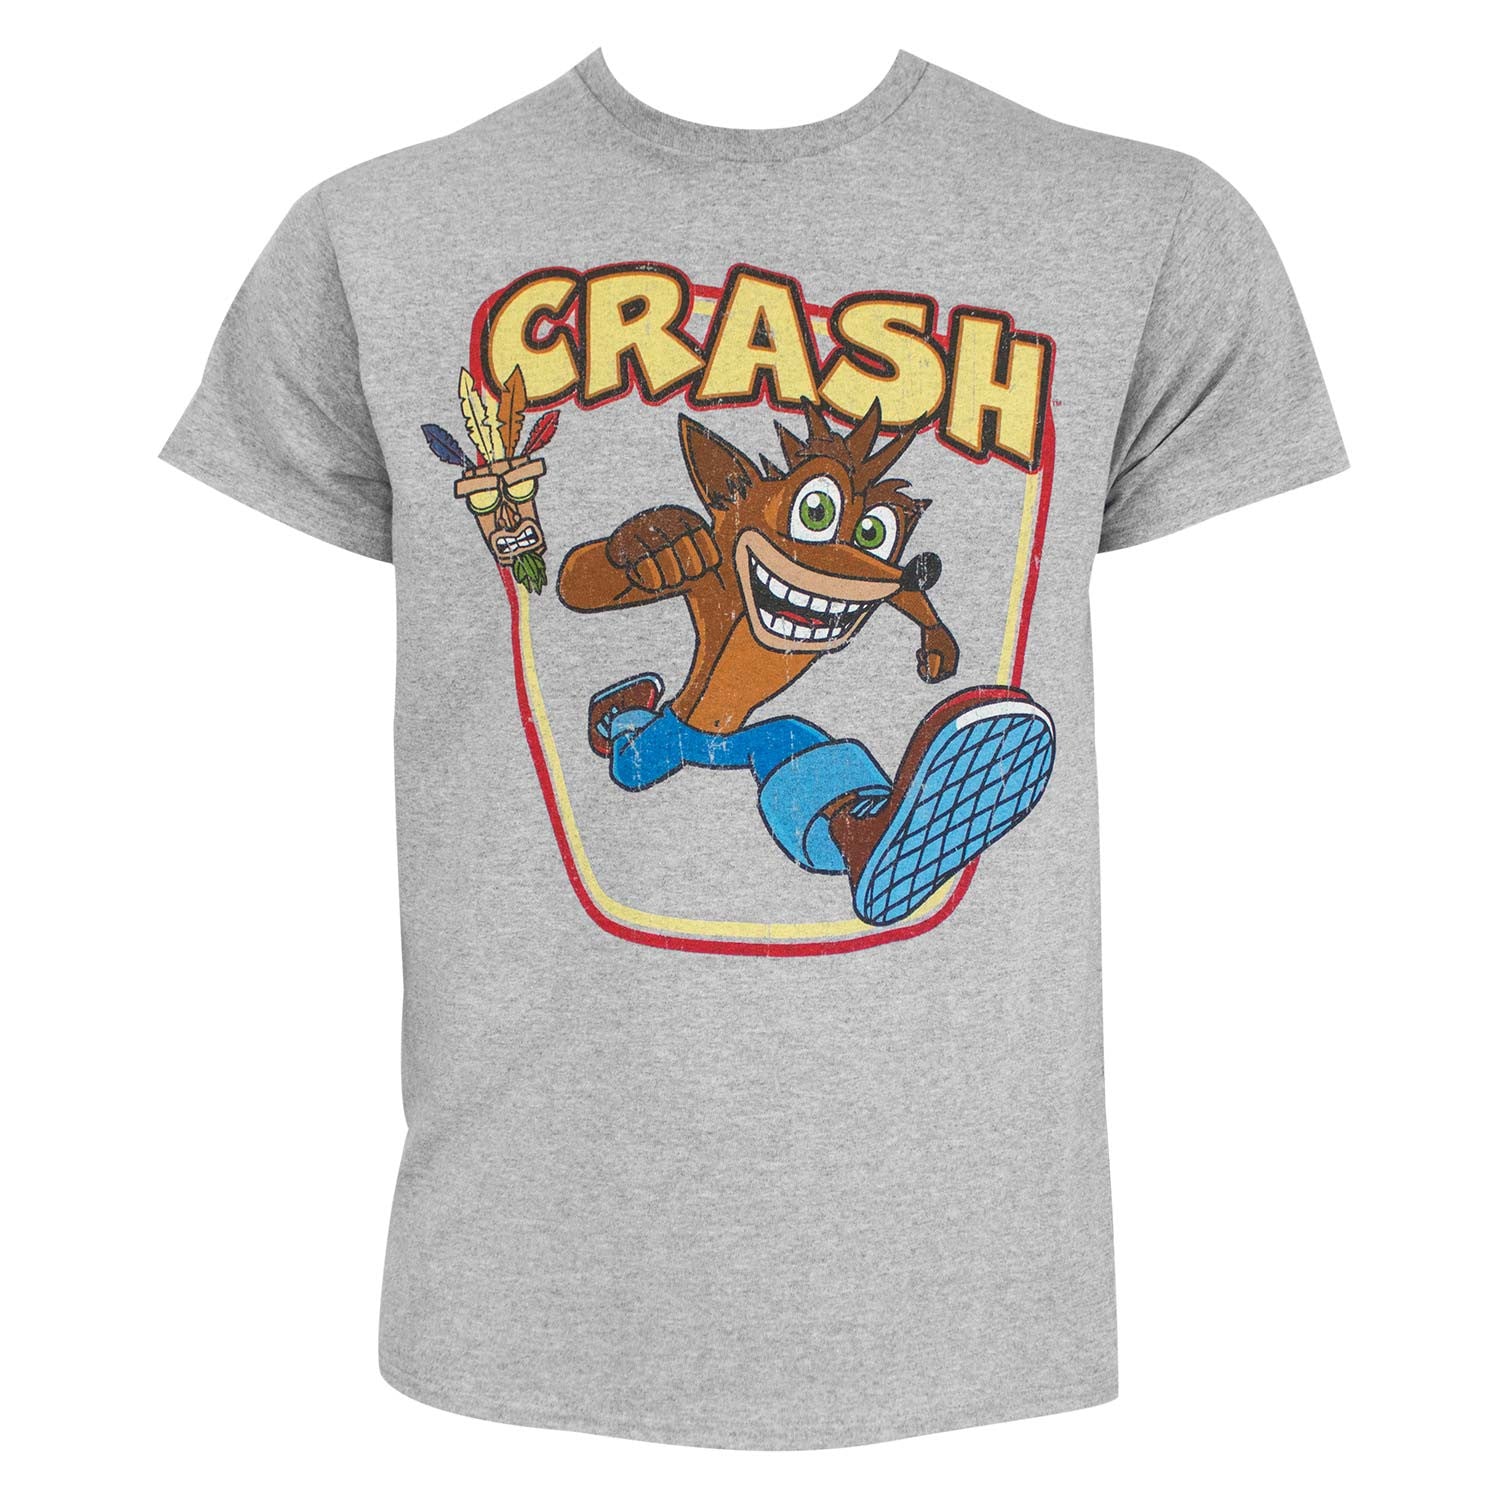 Crash Bandicoot Aku-Aku Grey Tee Shirt